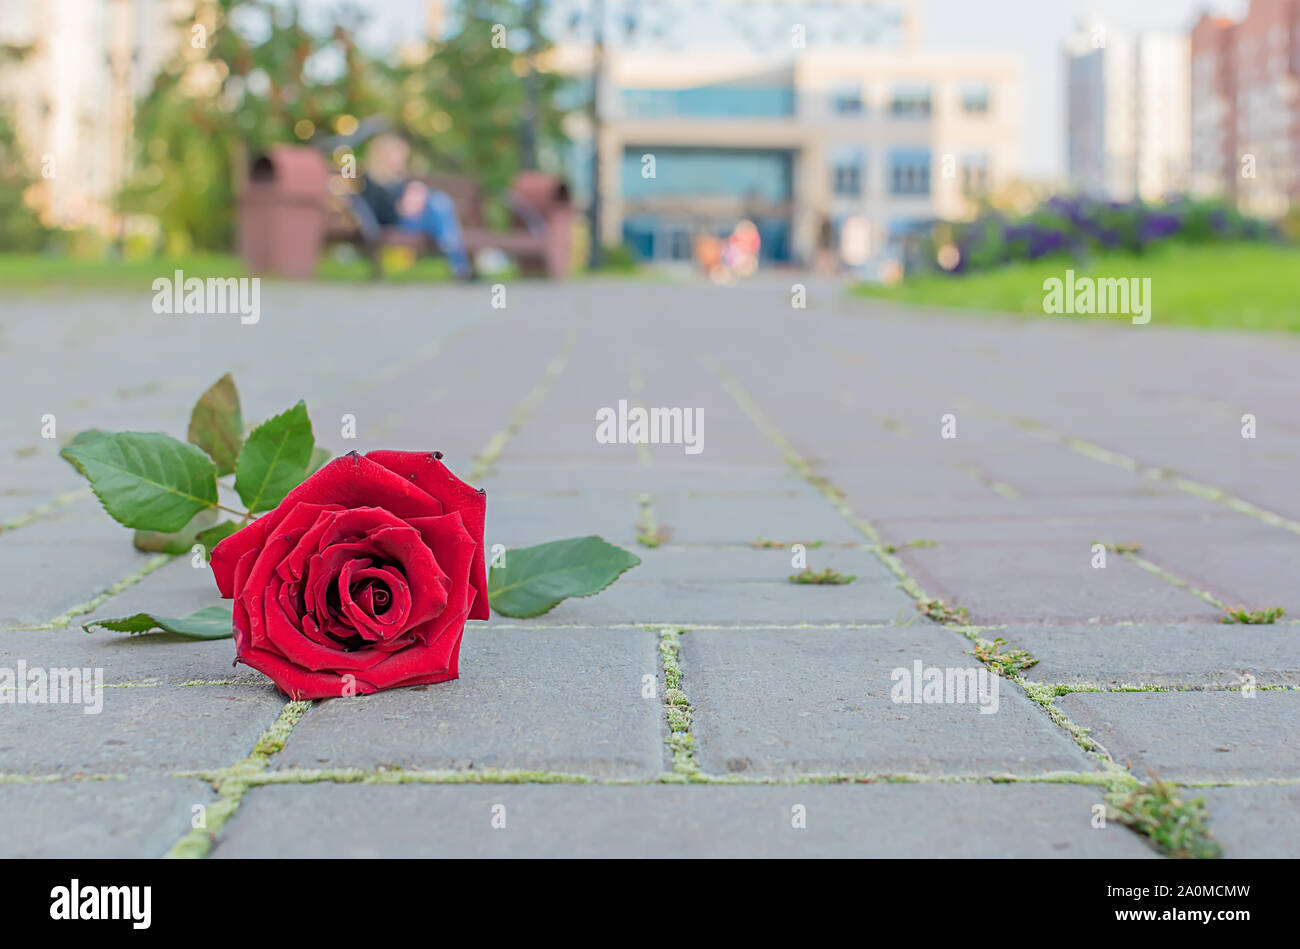 Un rejeté et jetés de fleurs rose rouge se trouve sur la chaussée de pierre d'un sentier dans un parc de la ville contre l'arrière-plan d'une jeune fille assise sur un banc Banque D'Images